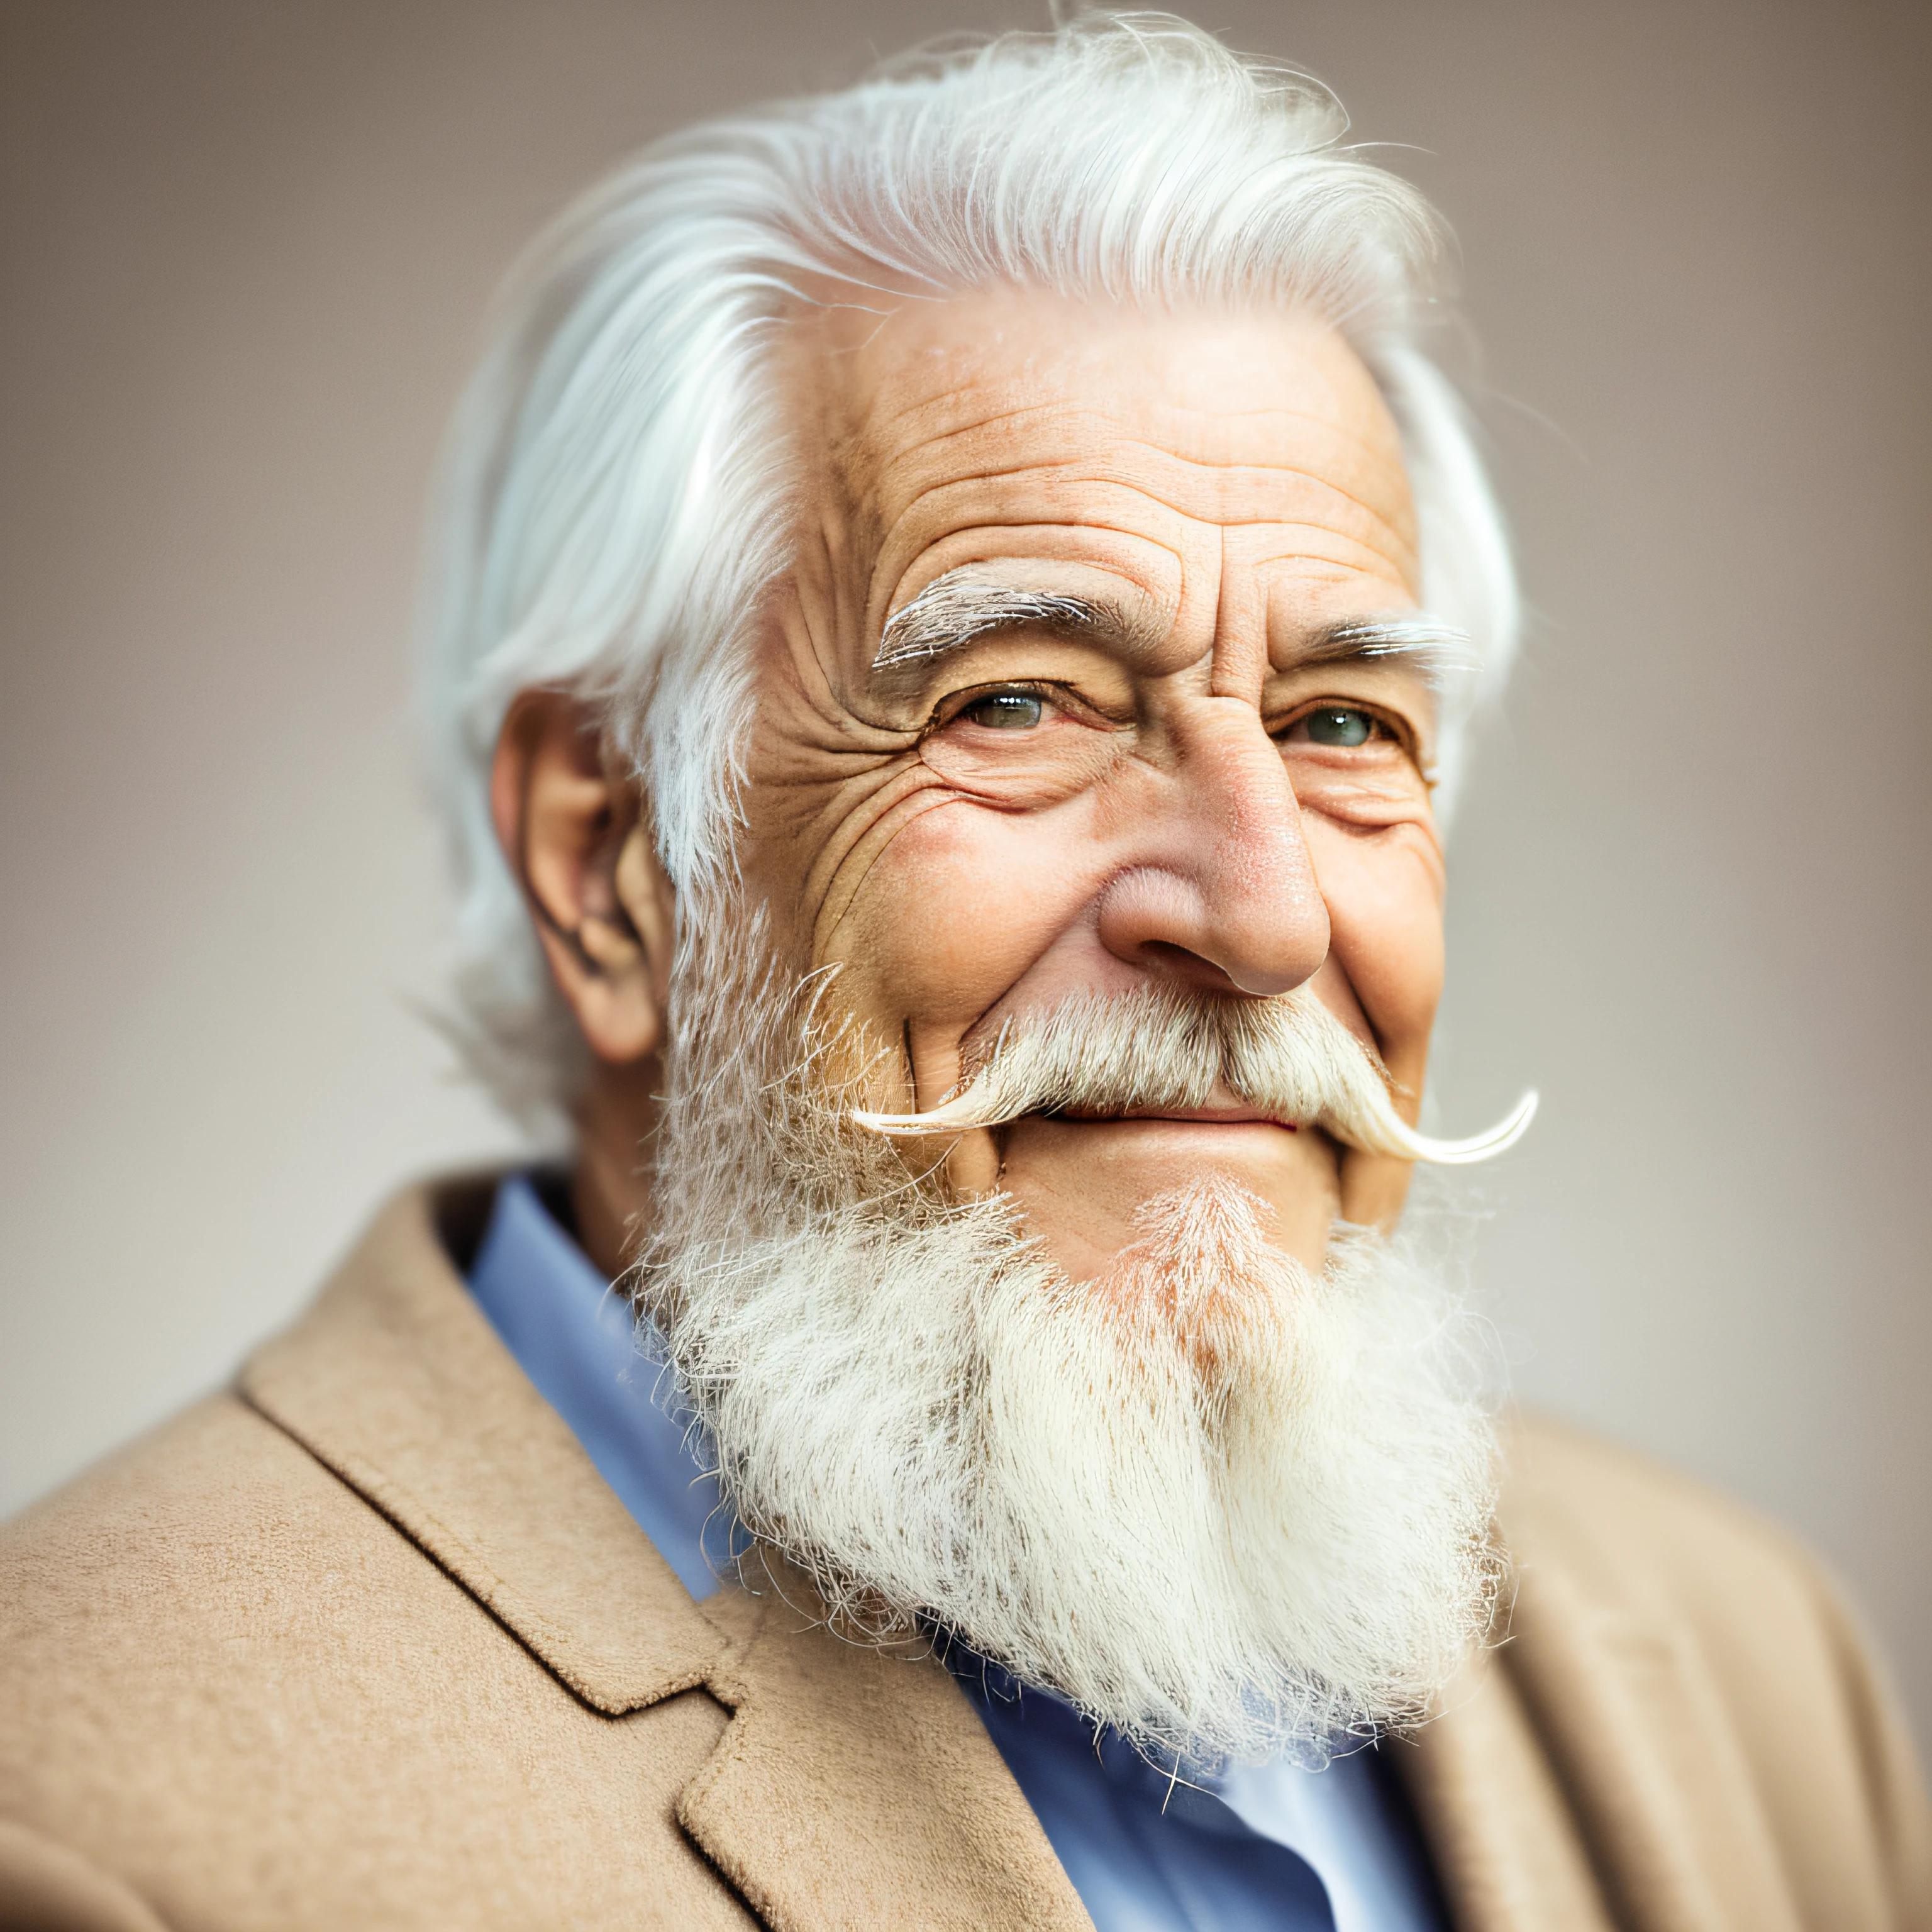 старейшина с бородой и седыми волосами, улыбается, смотреть продюсирование, портрет, возле лица